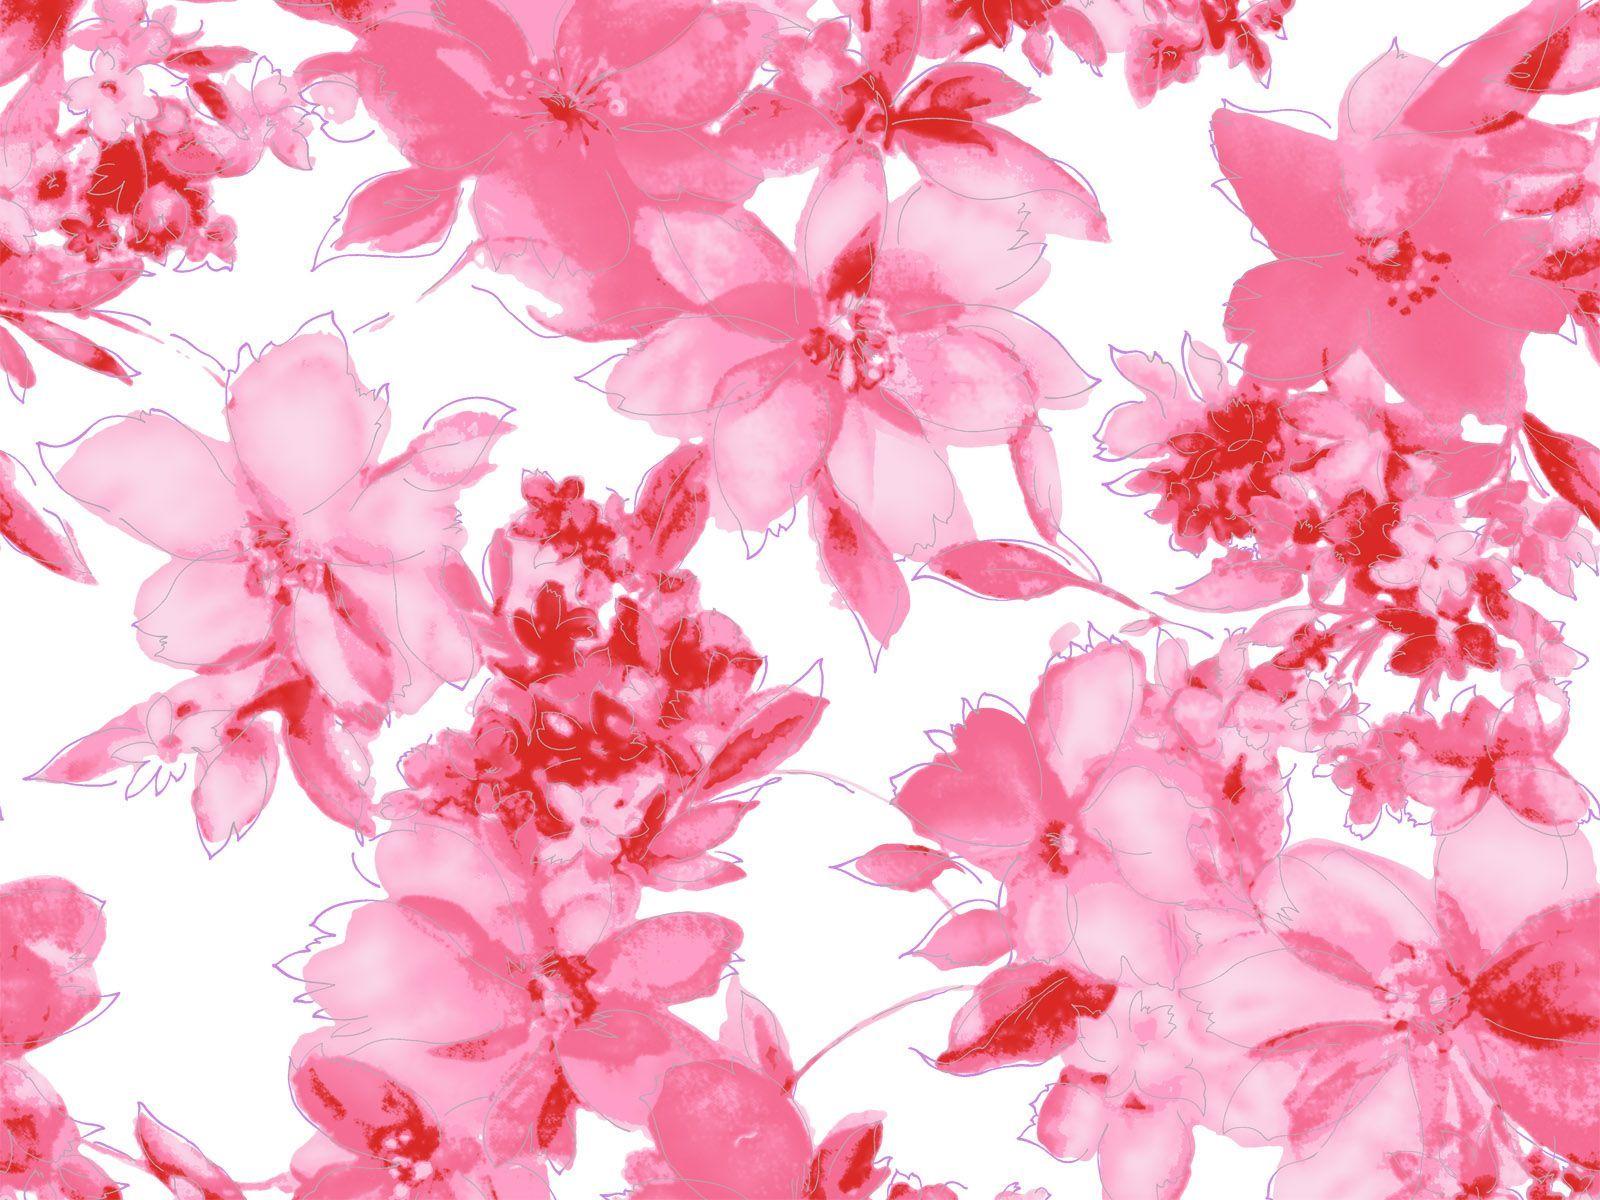 â º Designer Selection Vintage Ditsy Floral Wallpaper Teal / Pink